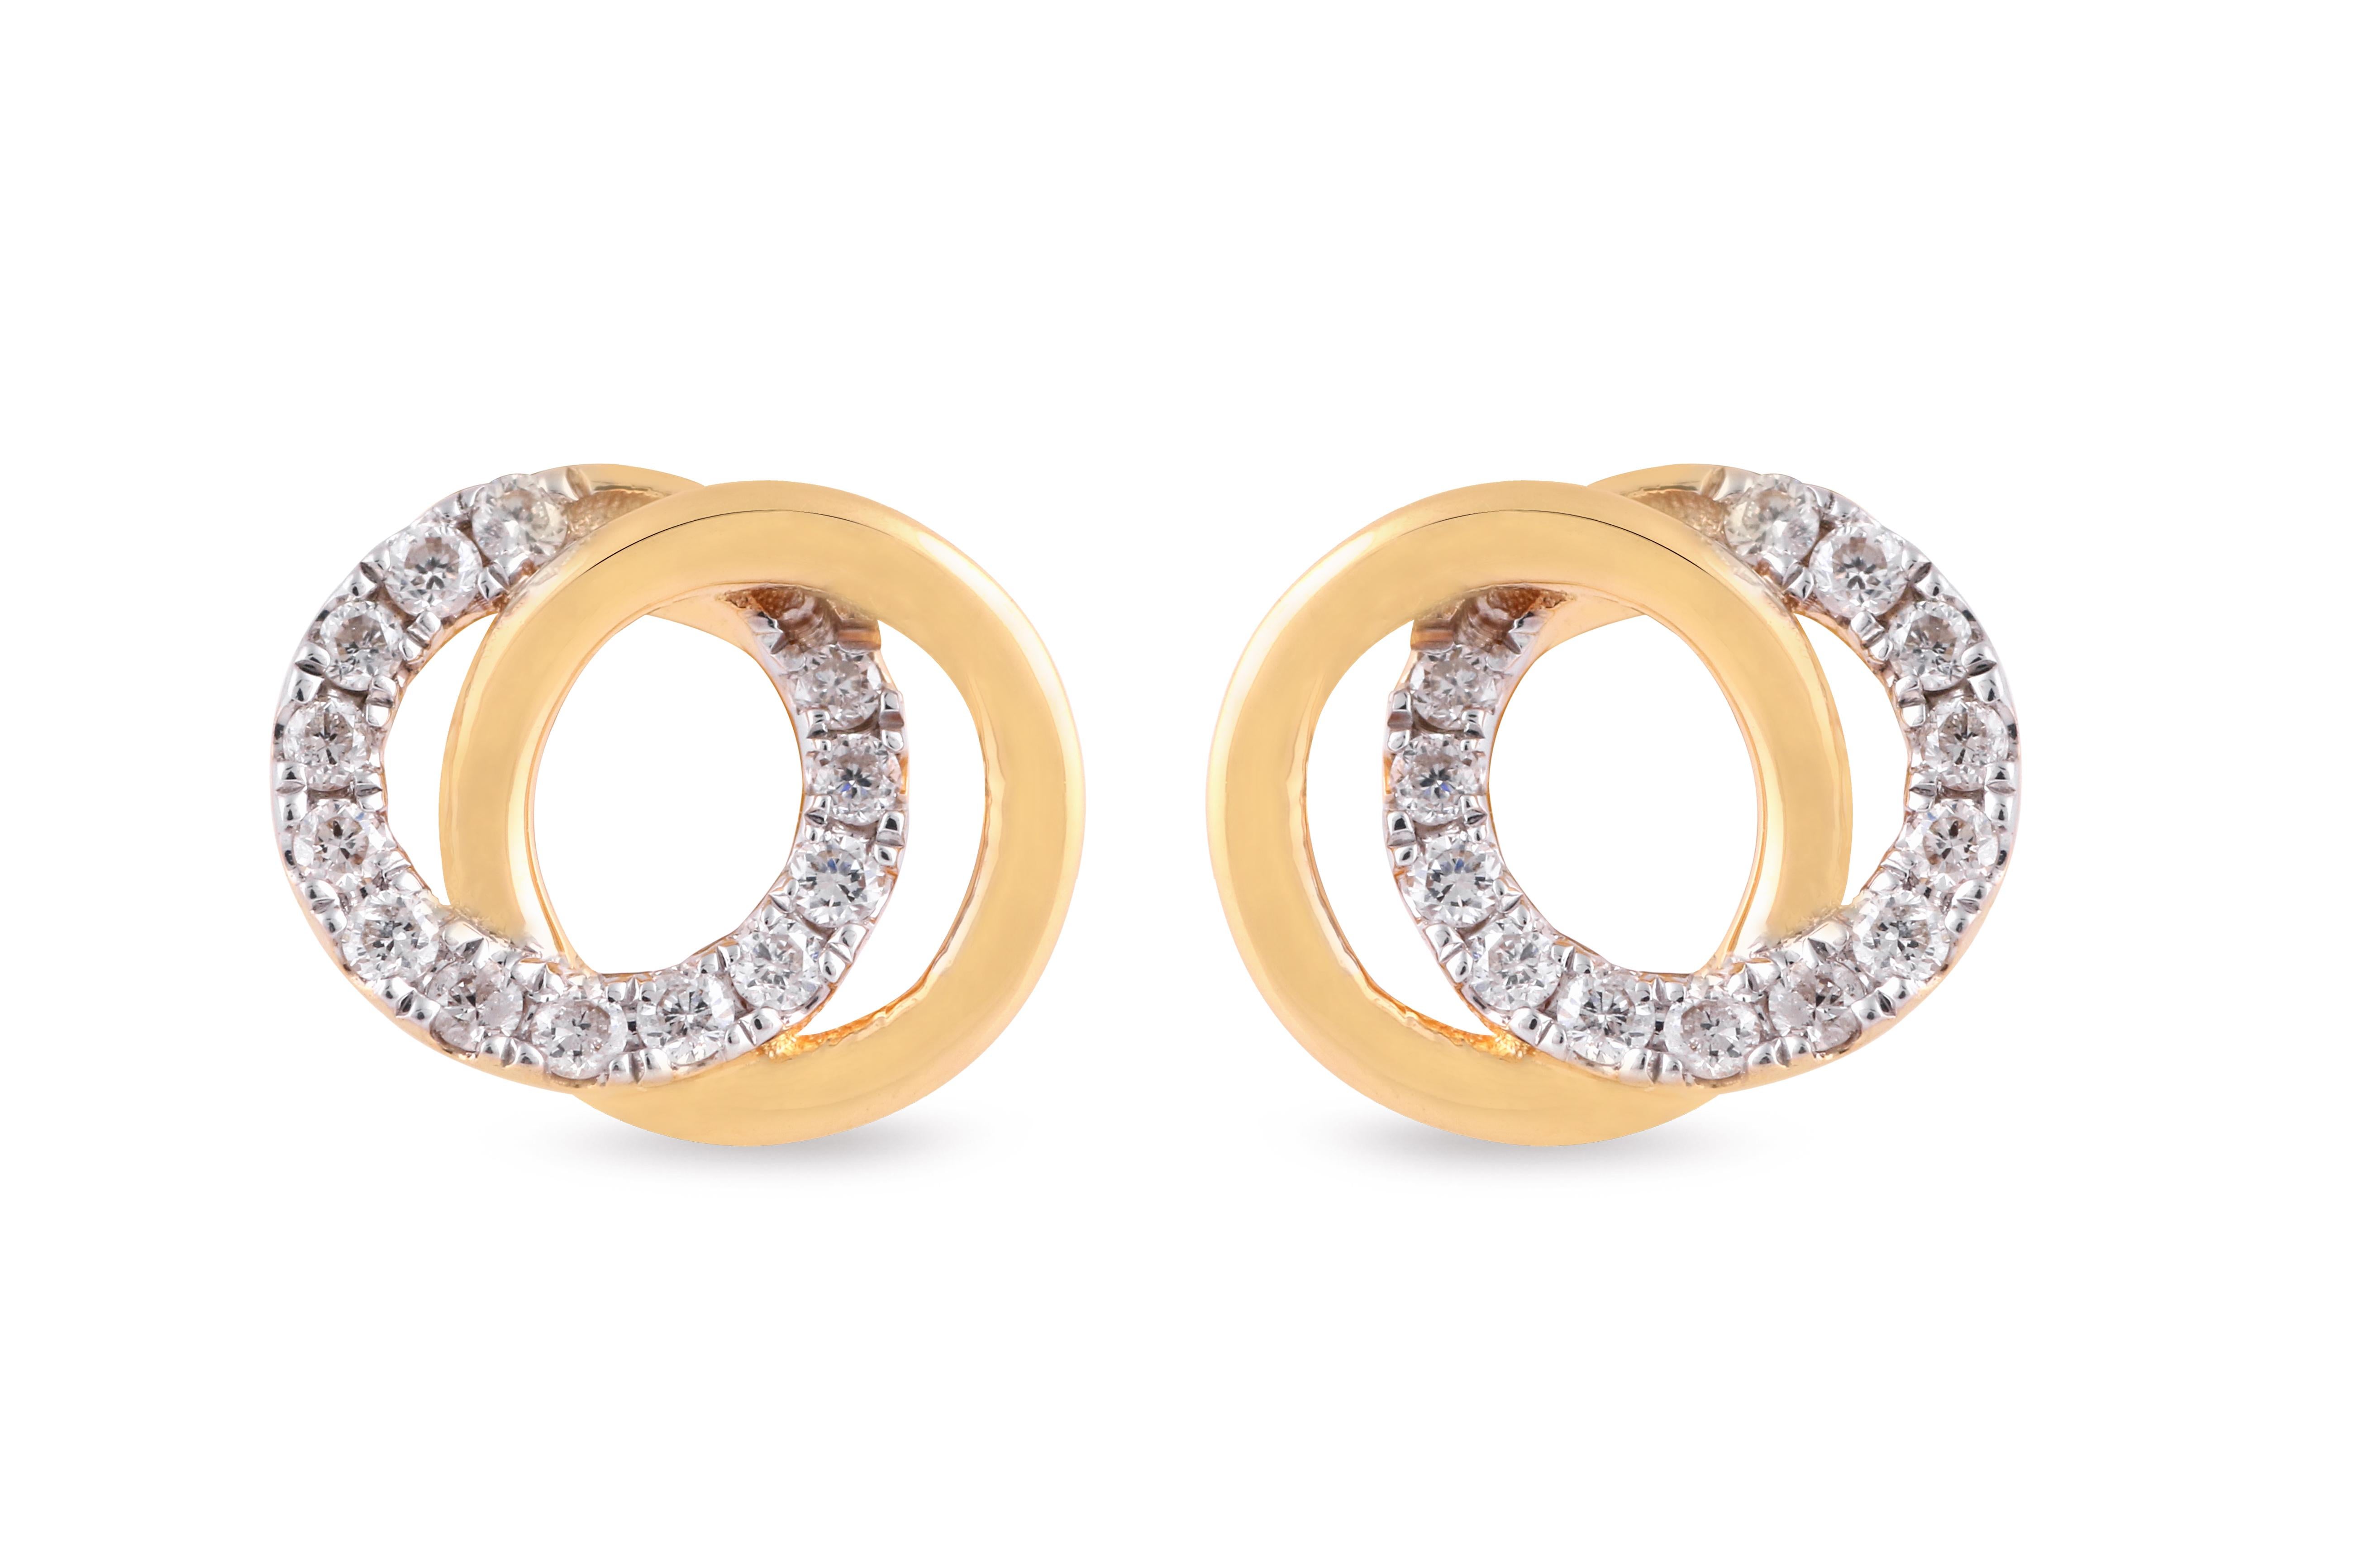 Unsere wunderschönen Diamantohrringe sind in die erstaunlichsten Designs eingefasst, die von modernen Schmuckstücken bis hin zu faszinierenden Klassikern reichen, und sie werden sicherlich die Romantik zwischen Ihnen und Ihrem Ehepartner wieder